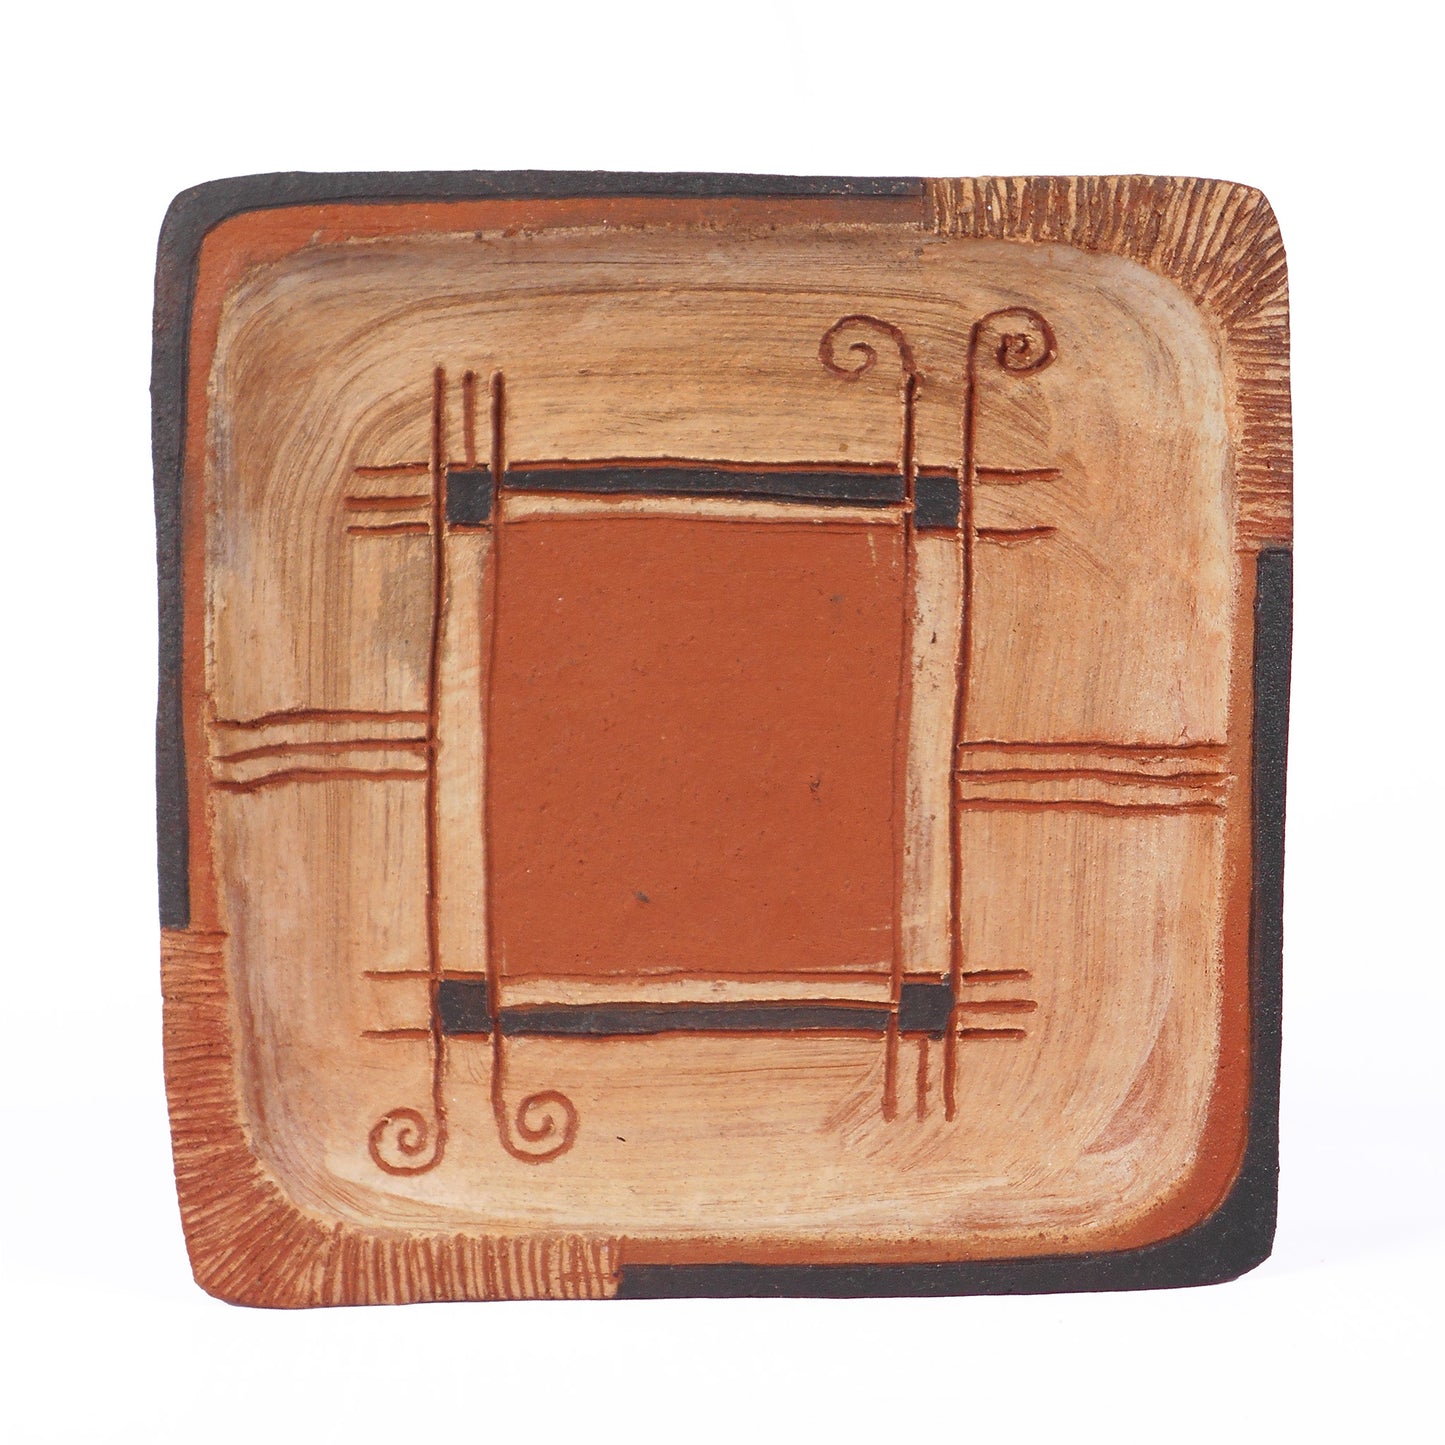 Terra Cotta  Square Plate. 7" / 17.5cm Square